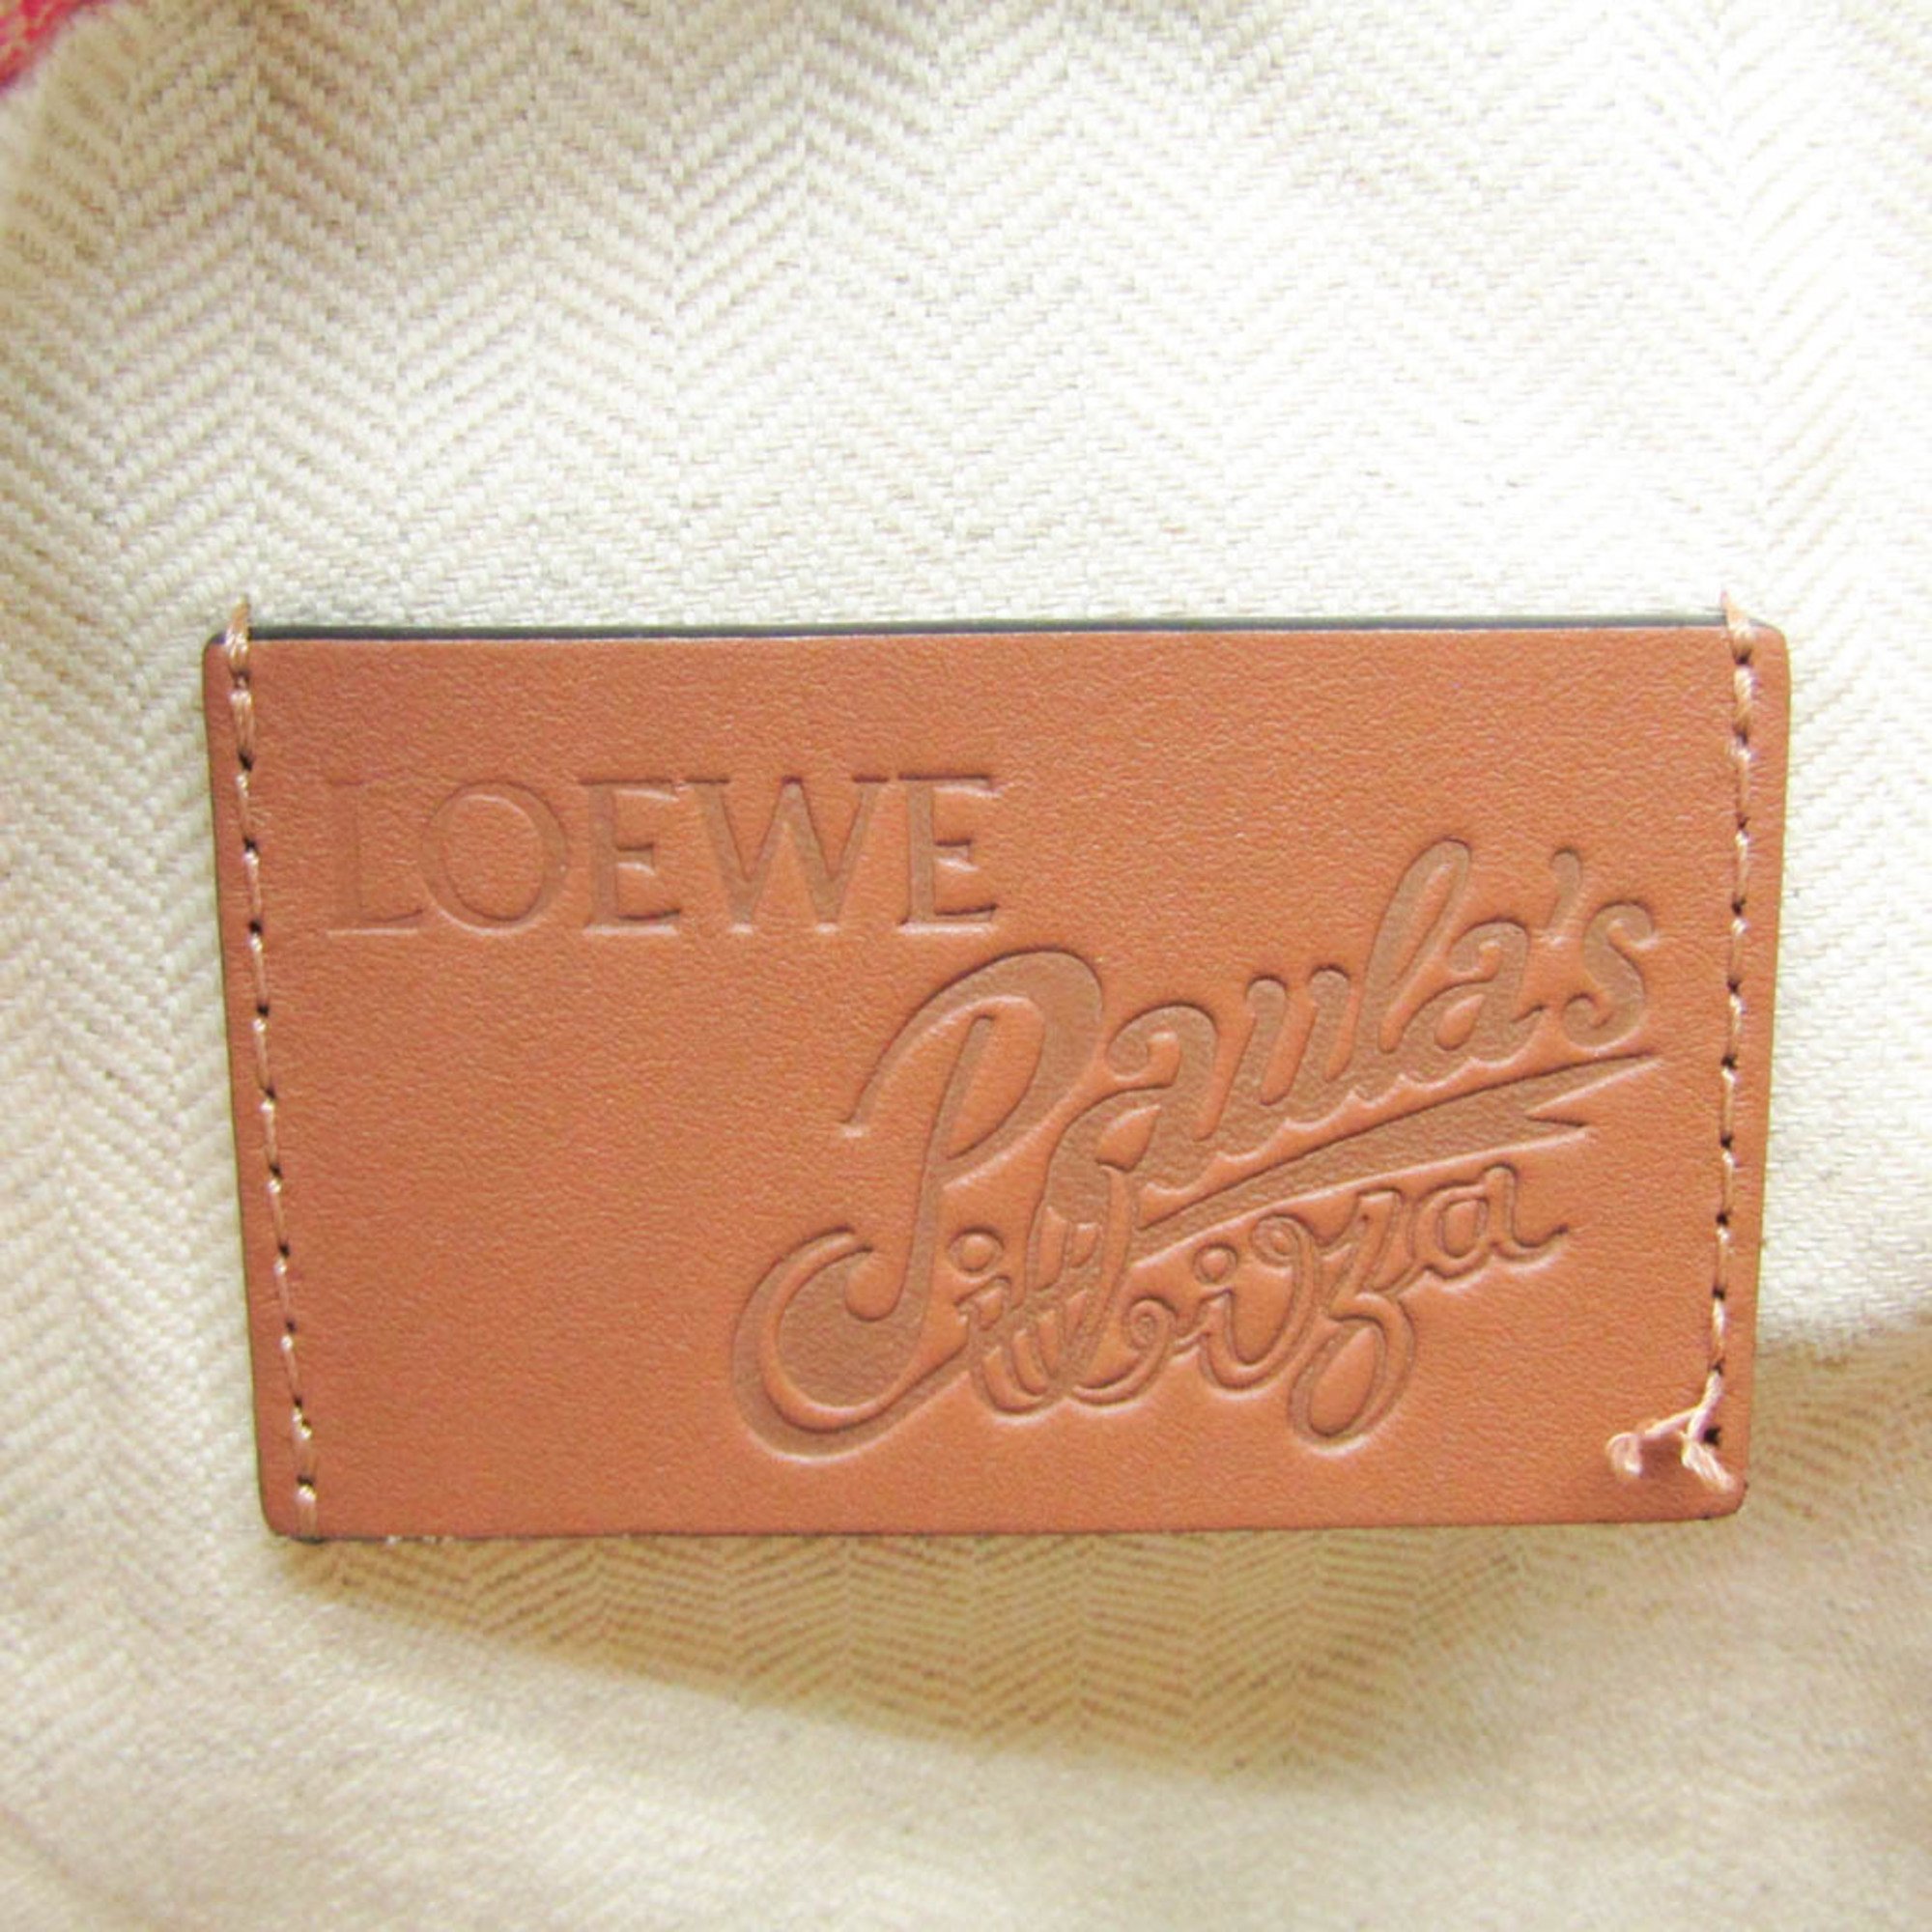 Loewe Bottle Cap Paulas Drawstring Pouch Women's Leather,Cotton Pouch Multi-color,Orange,Pink